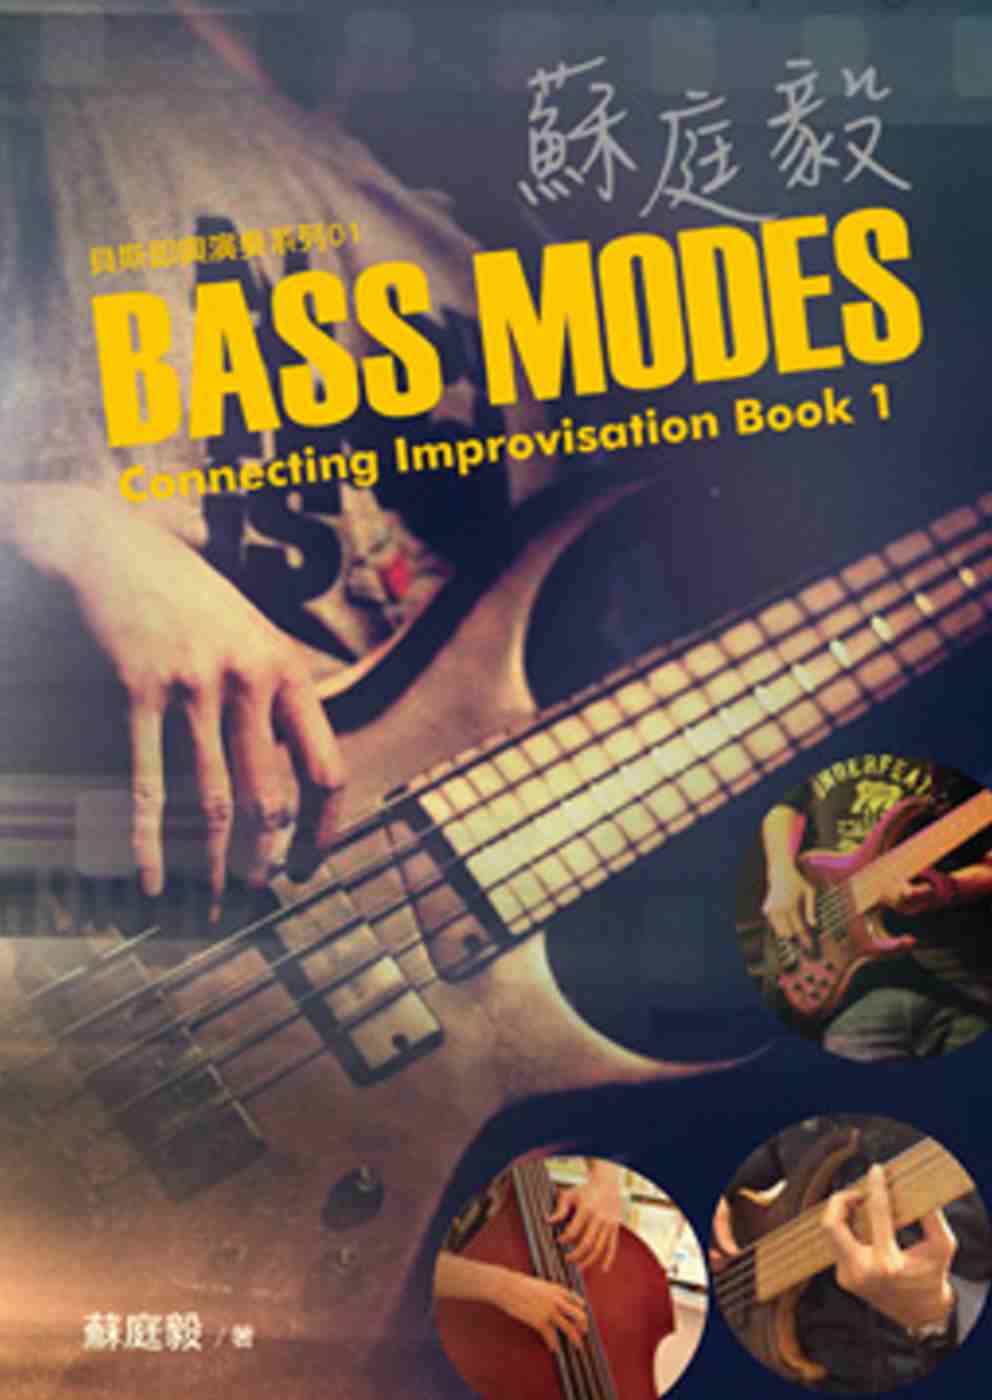 蘇庭毅Bass Modes Connecting Improvisation Book 1